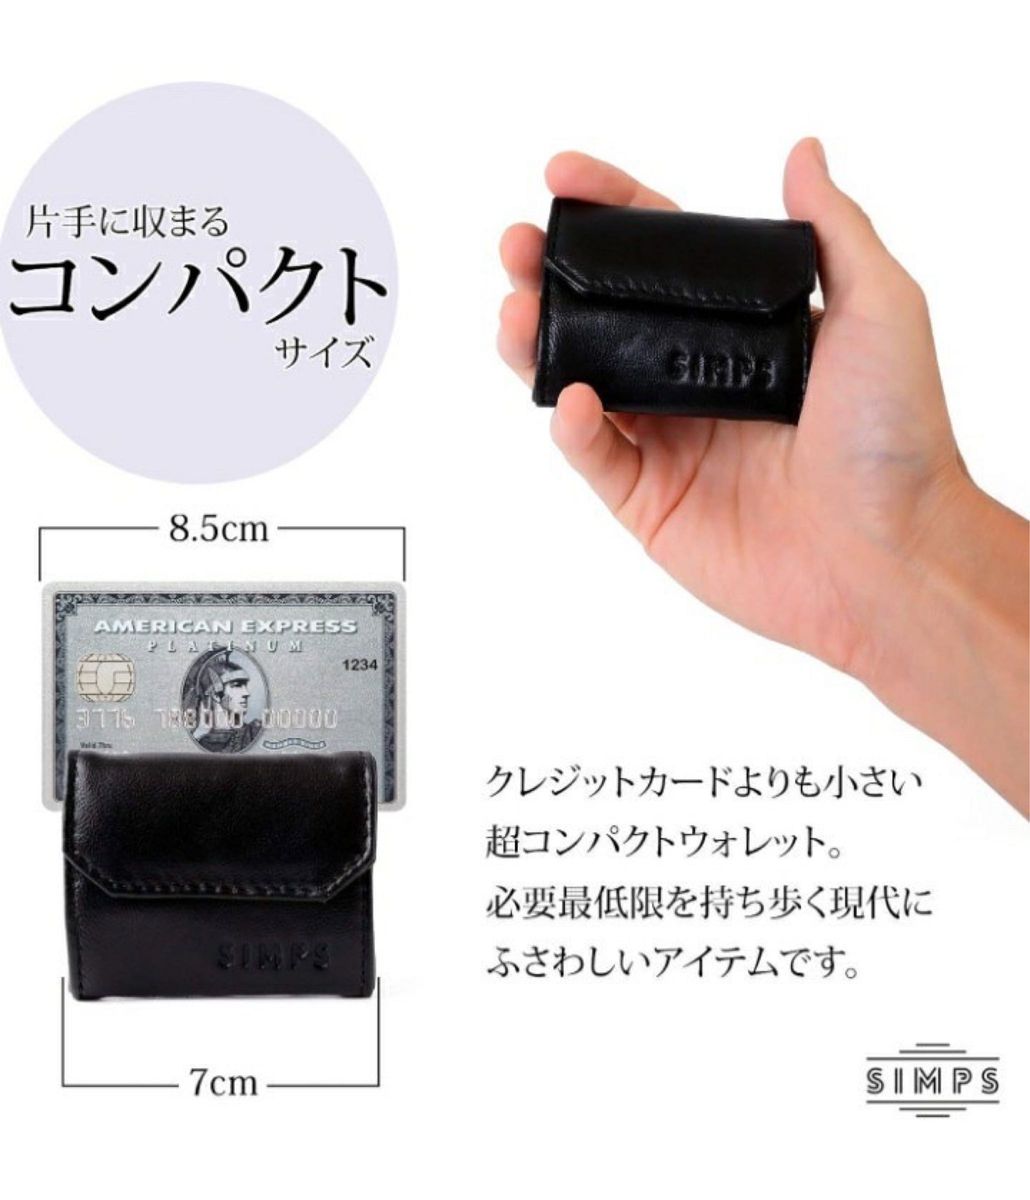 財布 極小財布 小さい財布 デニム メンズ レディース ユニセックス